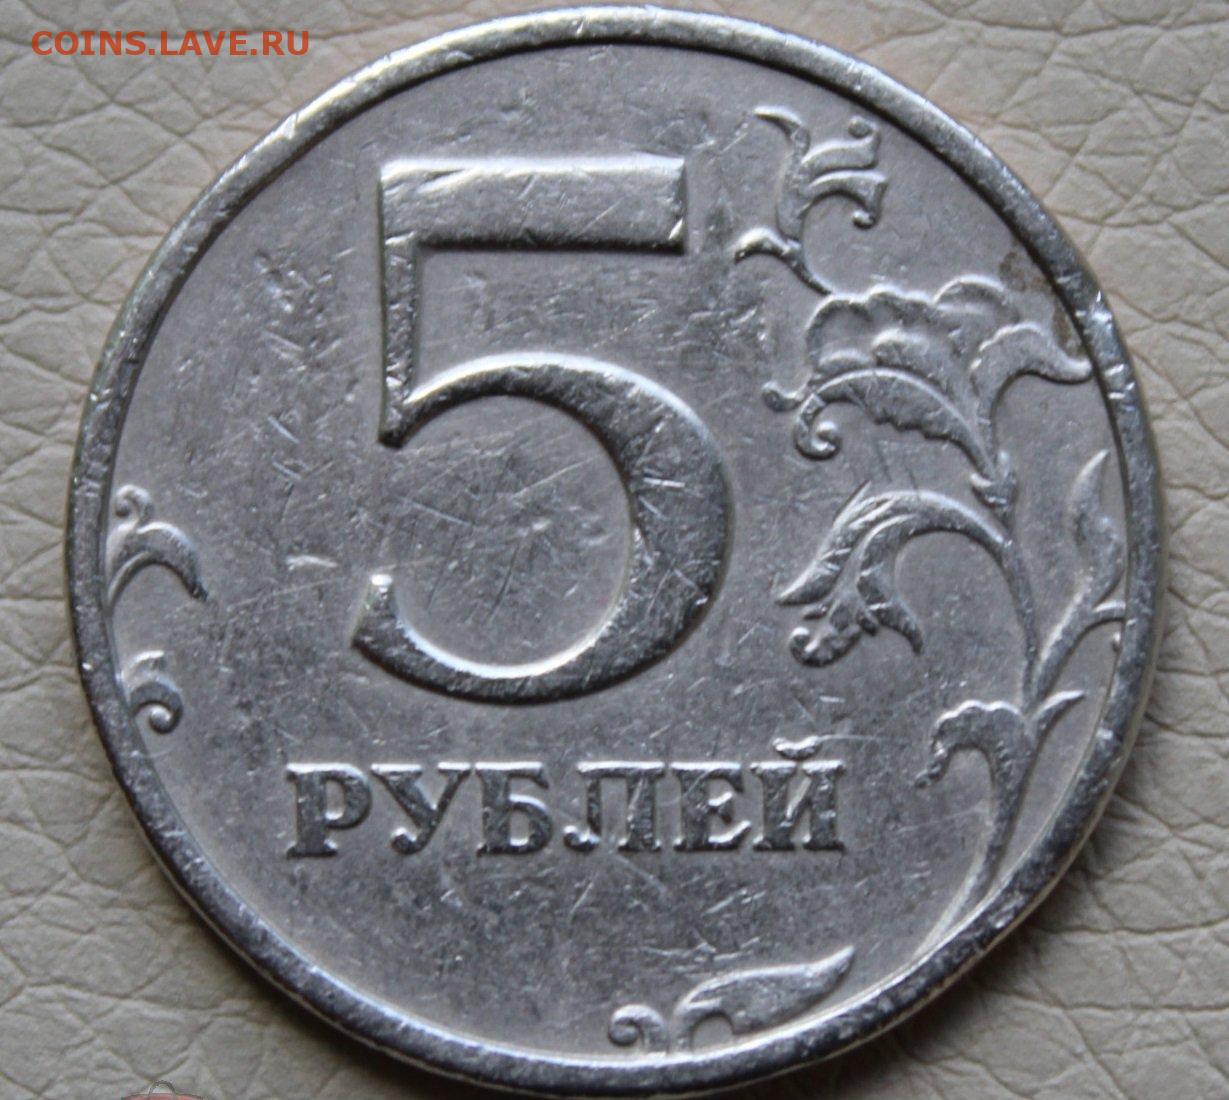 9 5 рубли. Монета 5 рублей 1999. 5 Рублей 1999 СПМД. 5 Рублей 2000 СПМД. 5 Рублевая монета 1999 года.